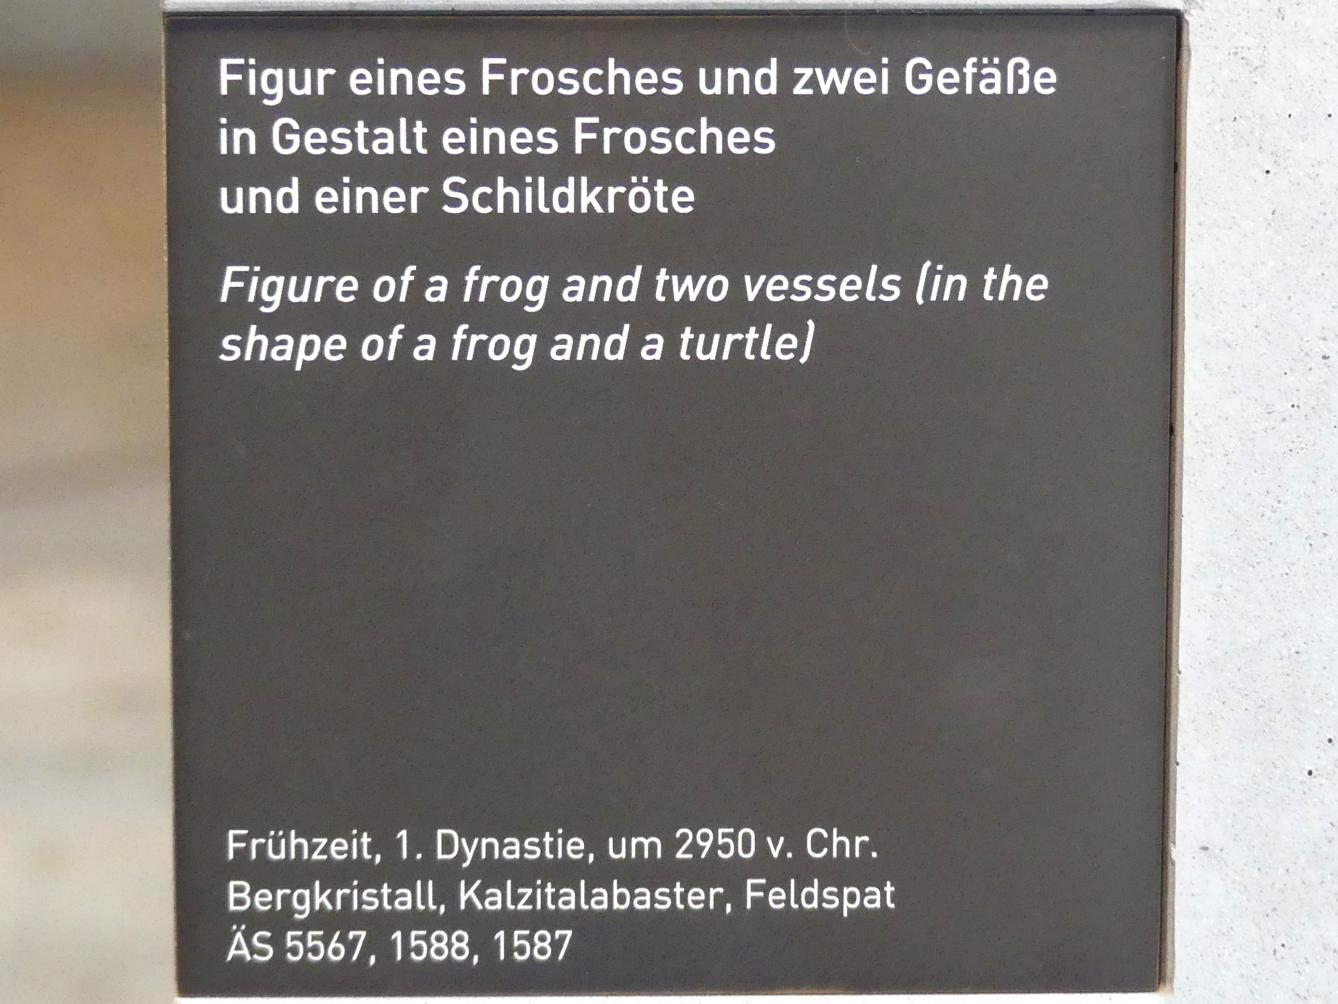 Gefäß in Gestalt eines Frosches, 1. Dynastie, Undatiert, 2950 v. Chr., Bild 3/3